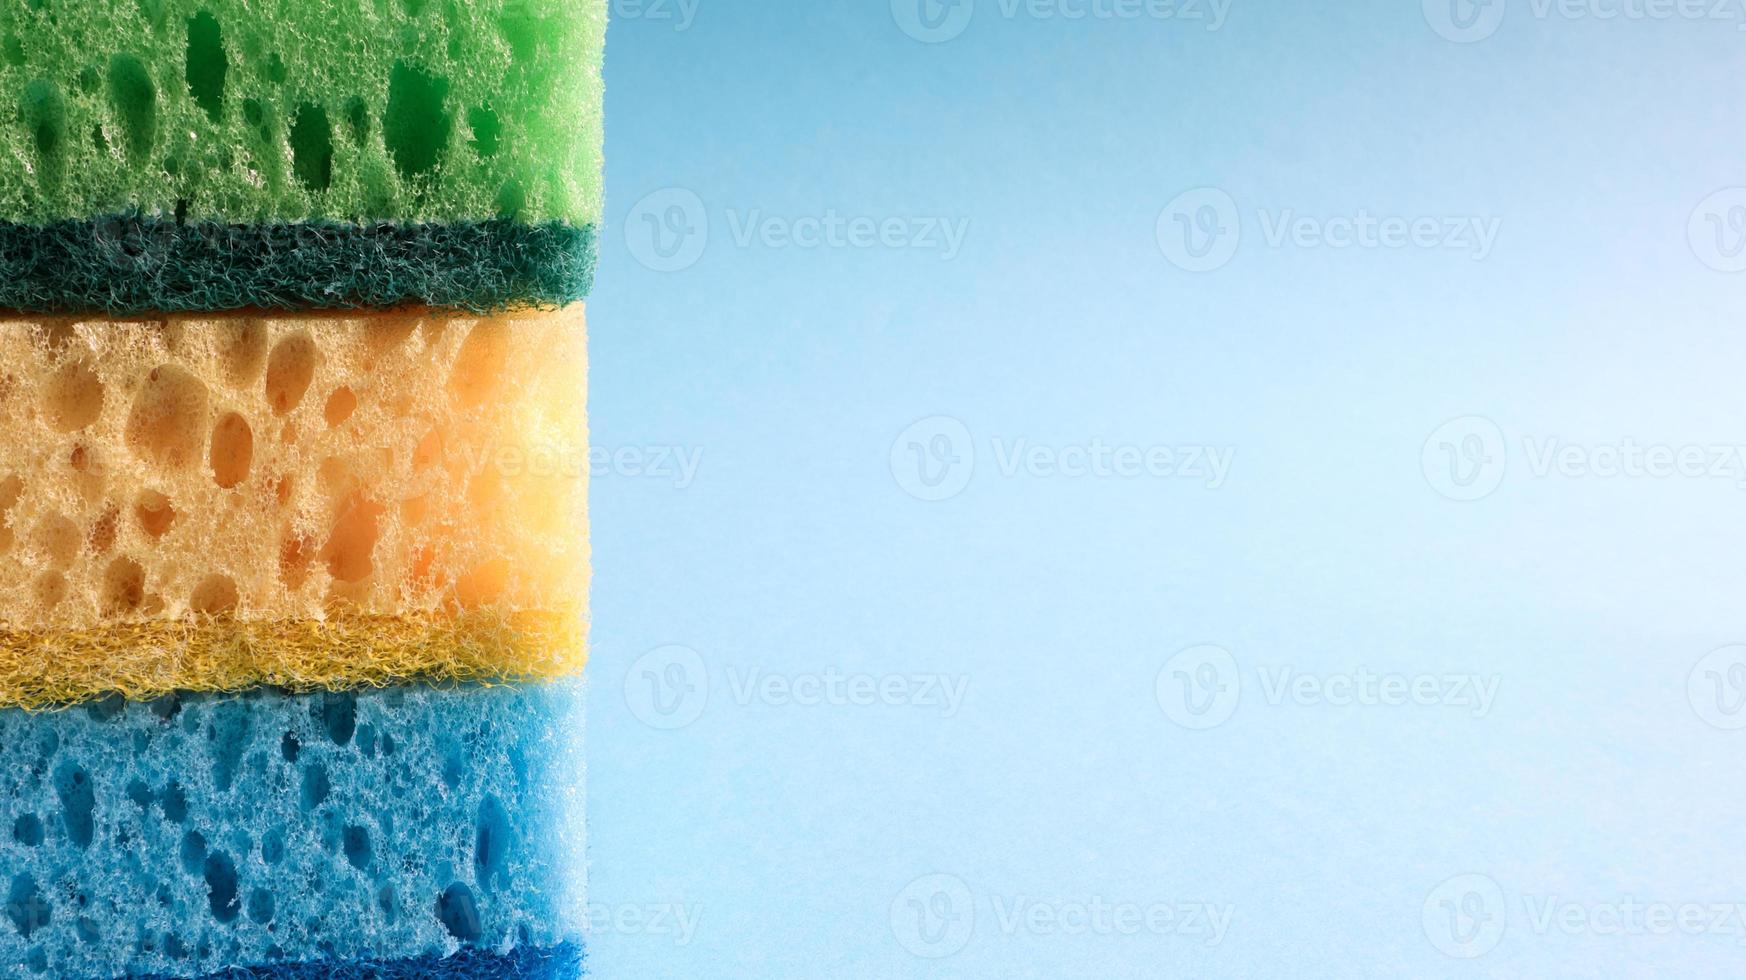 veel blauwe, rode, gele, groene sponzen worden gebruikt om het vuil te wassen en af te vegen dat door huisvrouwen in het dagelijks leven wordt gebruikt. ze zijn gemaakt van poreus materiaal zoals schuim. goede wasmiddelretentie foto